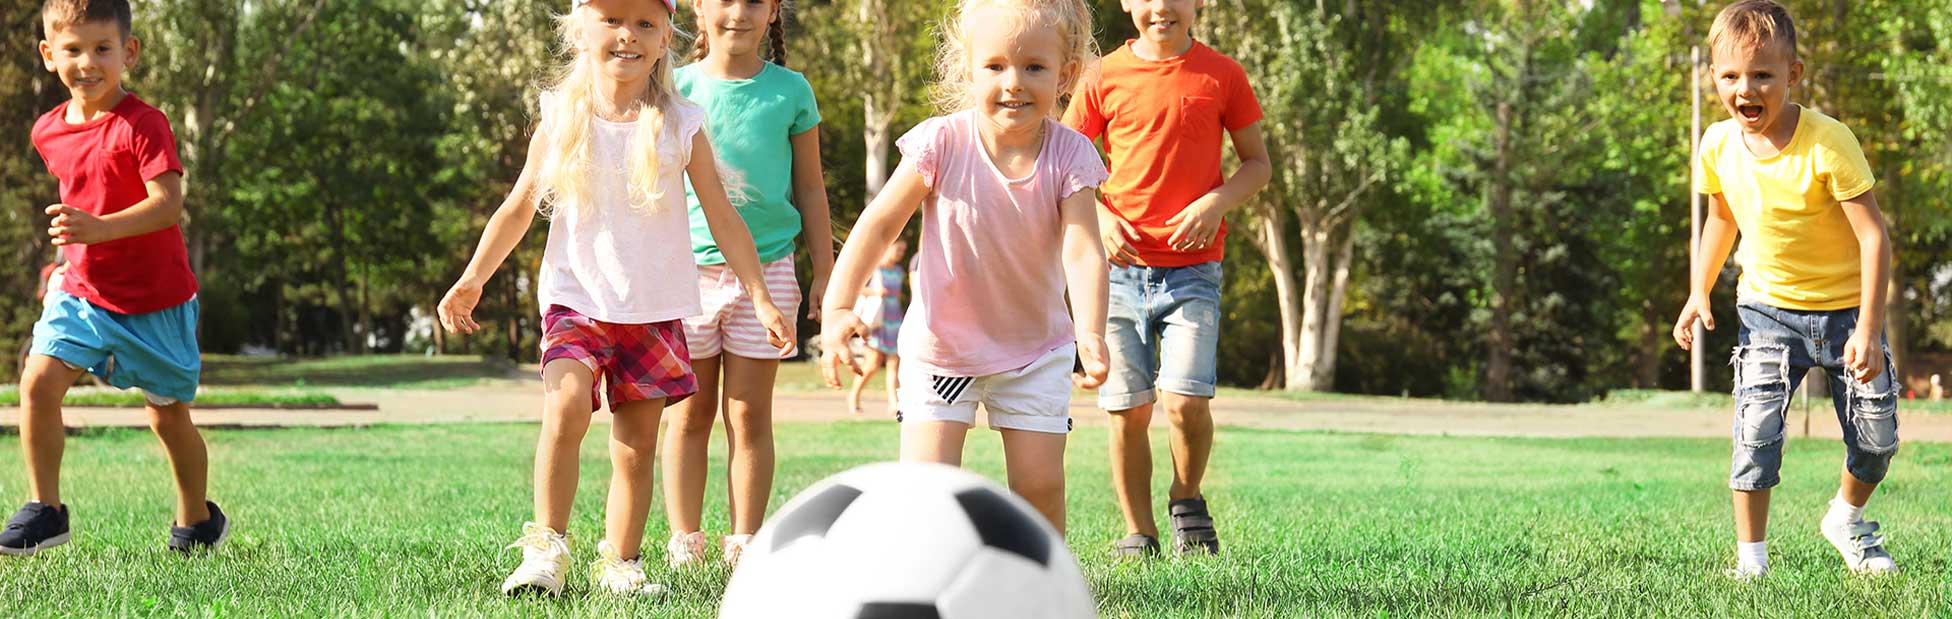 kids chasing soccer ball